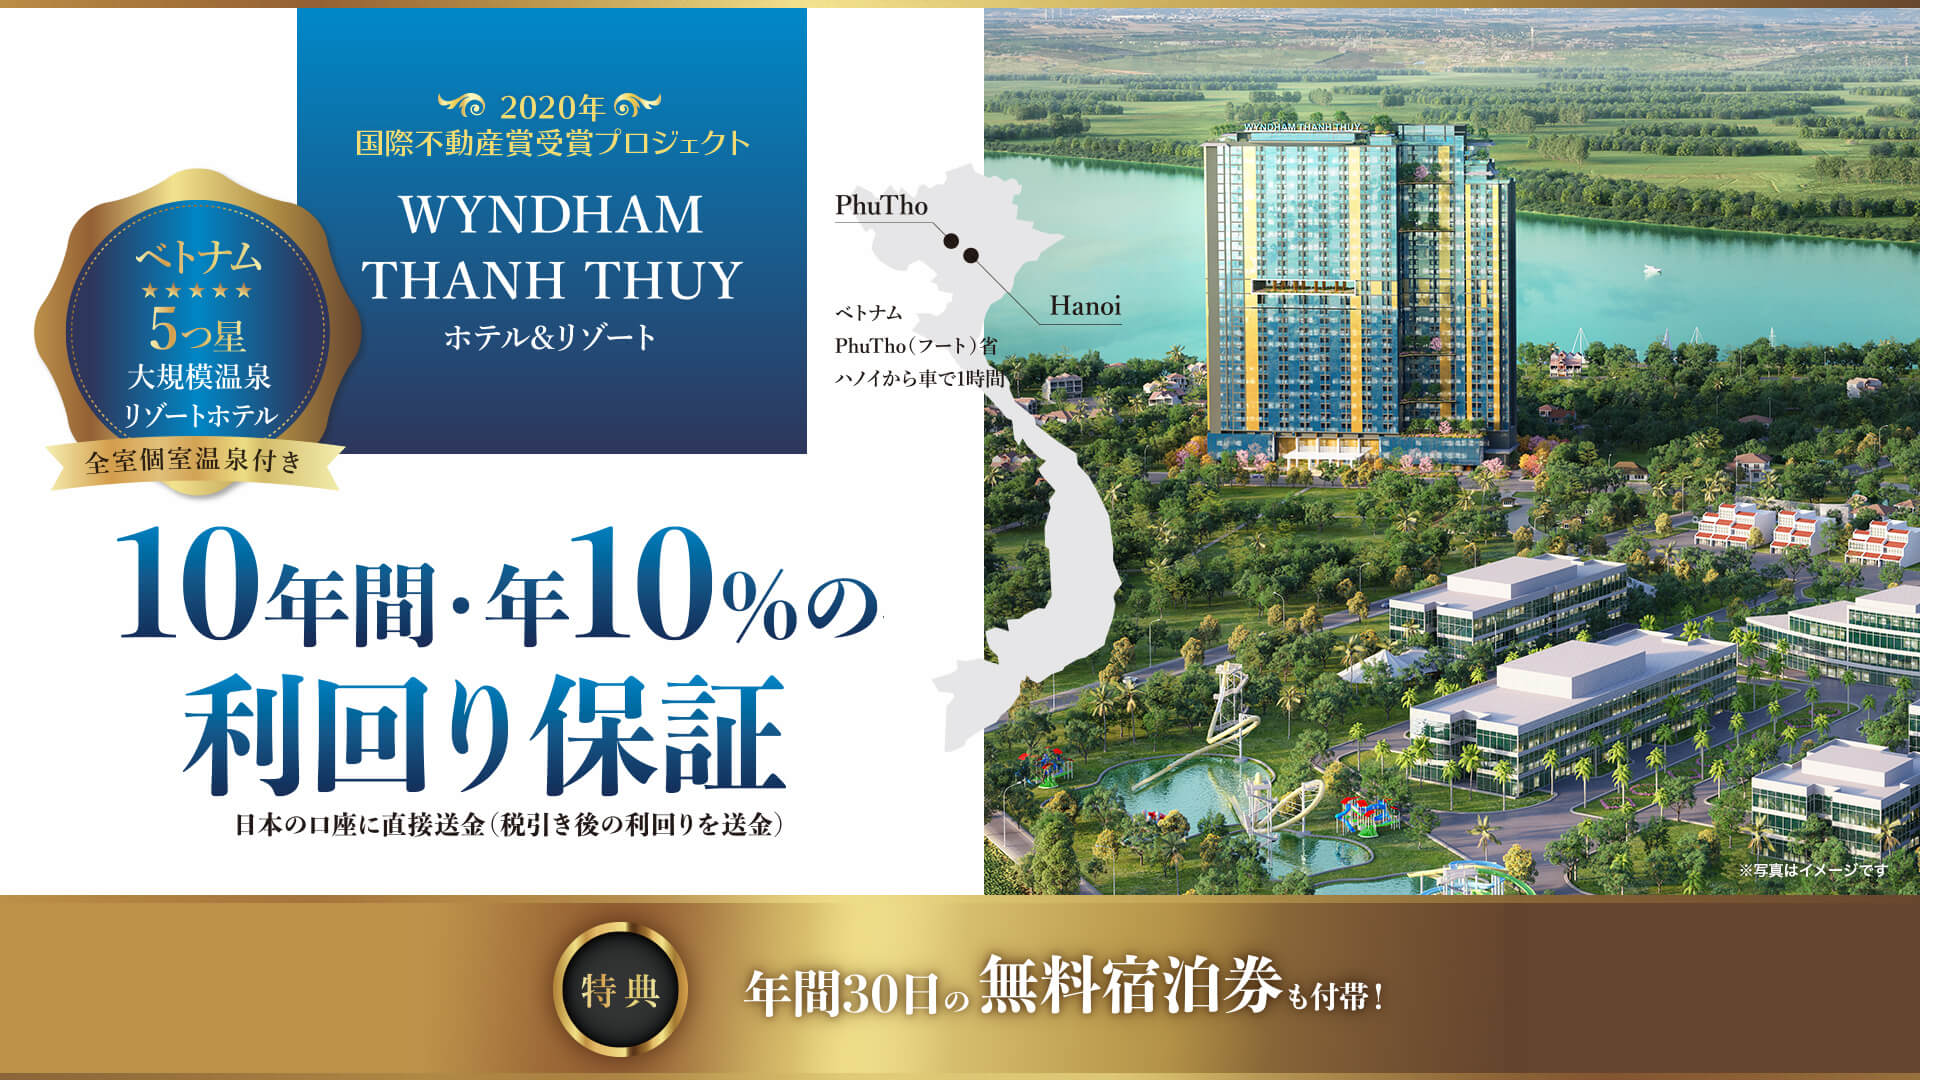 Wyndham Thanh Thuy Hotels & Resorts